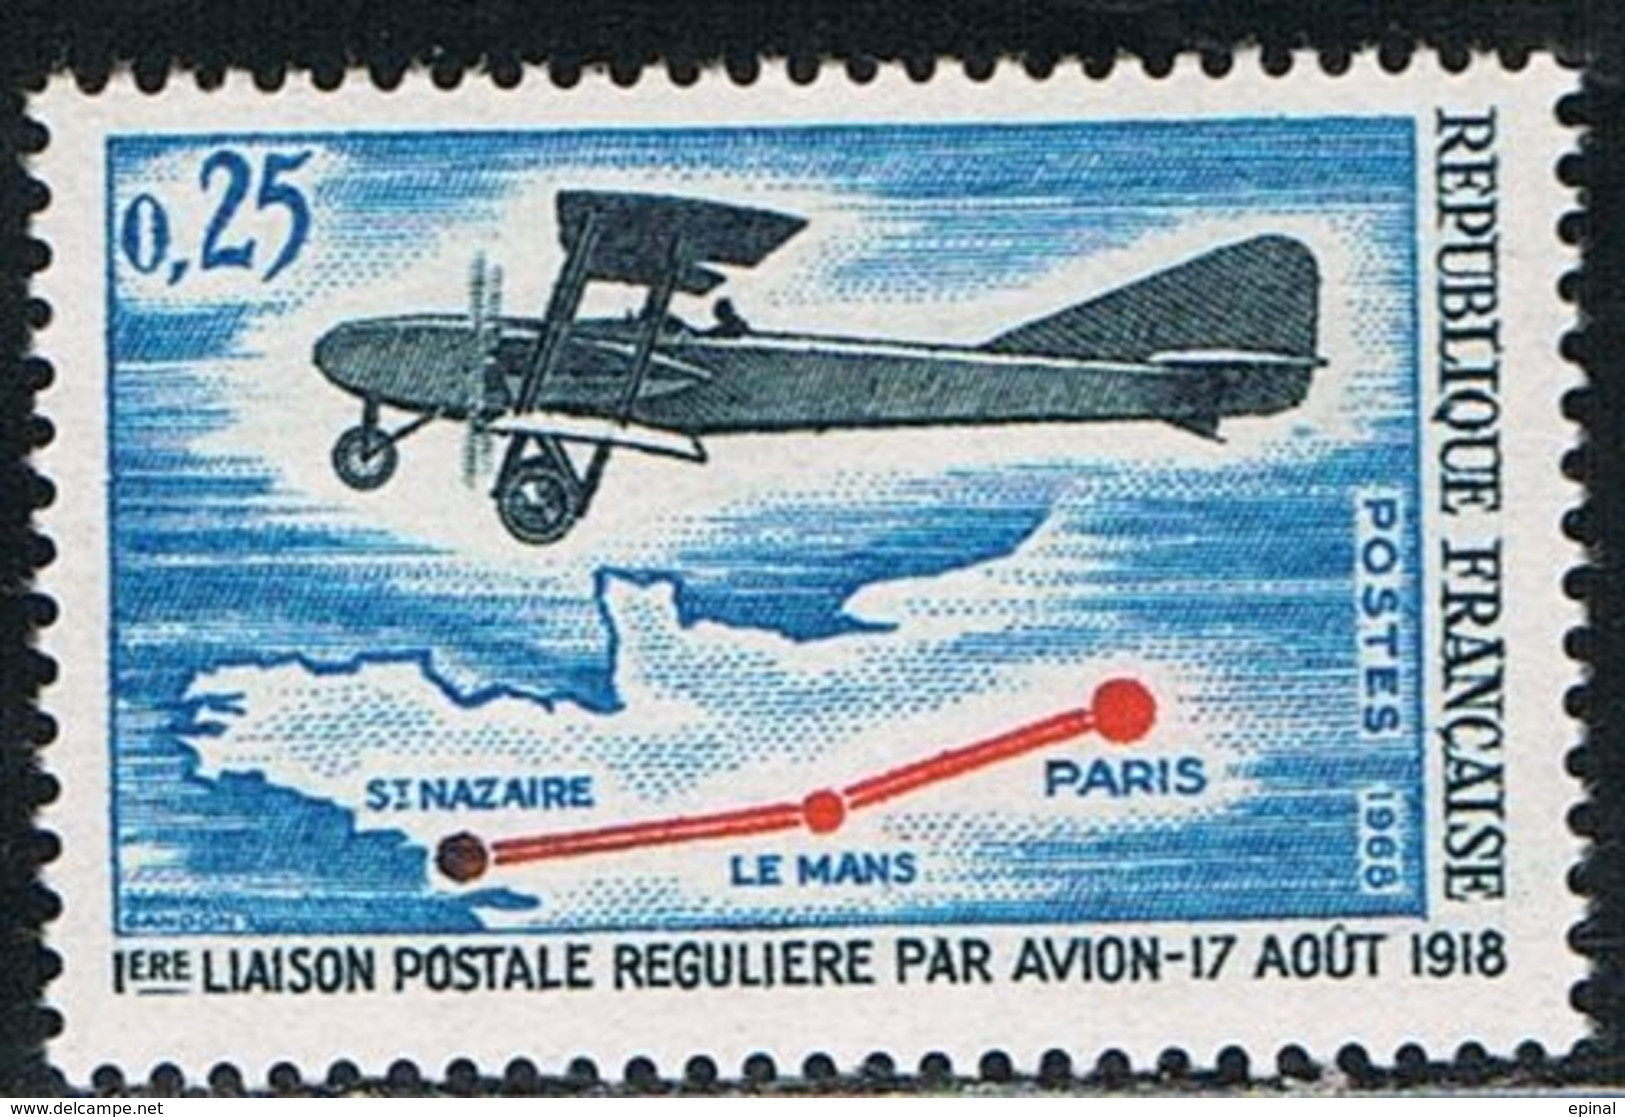 FRANCE : N° 1565 ** (1ère Liaison Postale Régulière Par Avion) - PRIX FIXE - - Nuevos